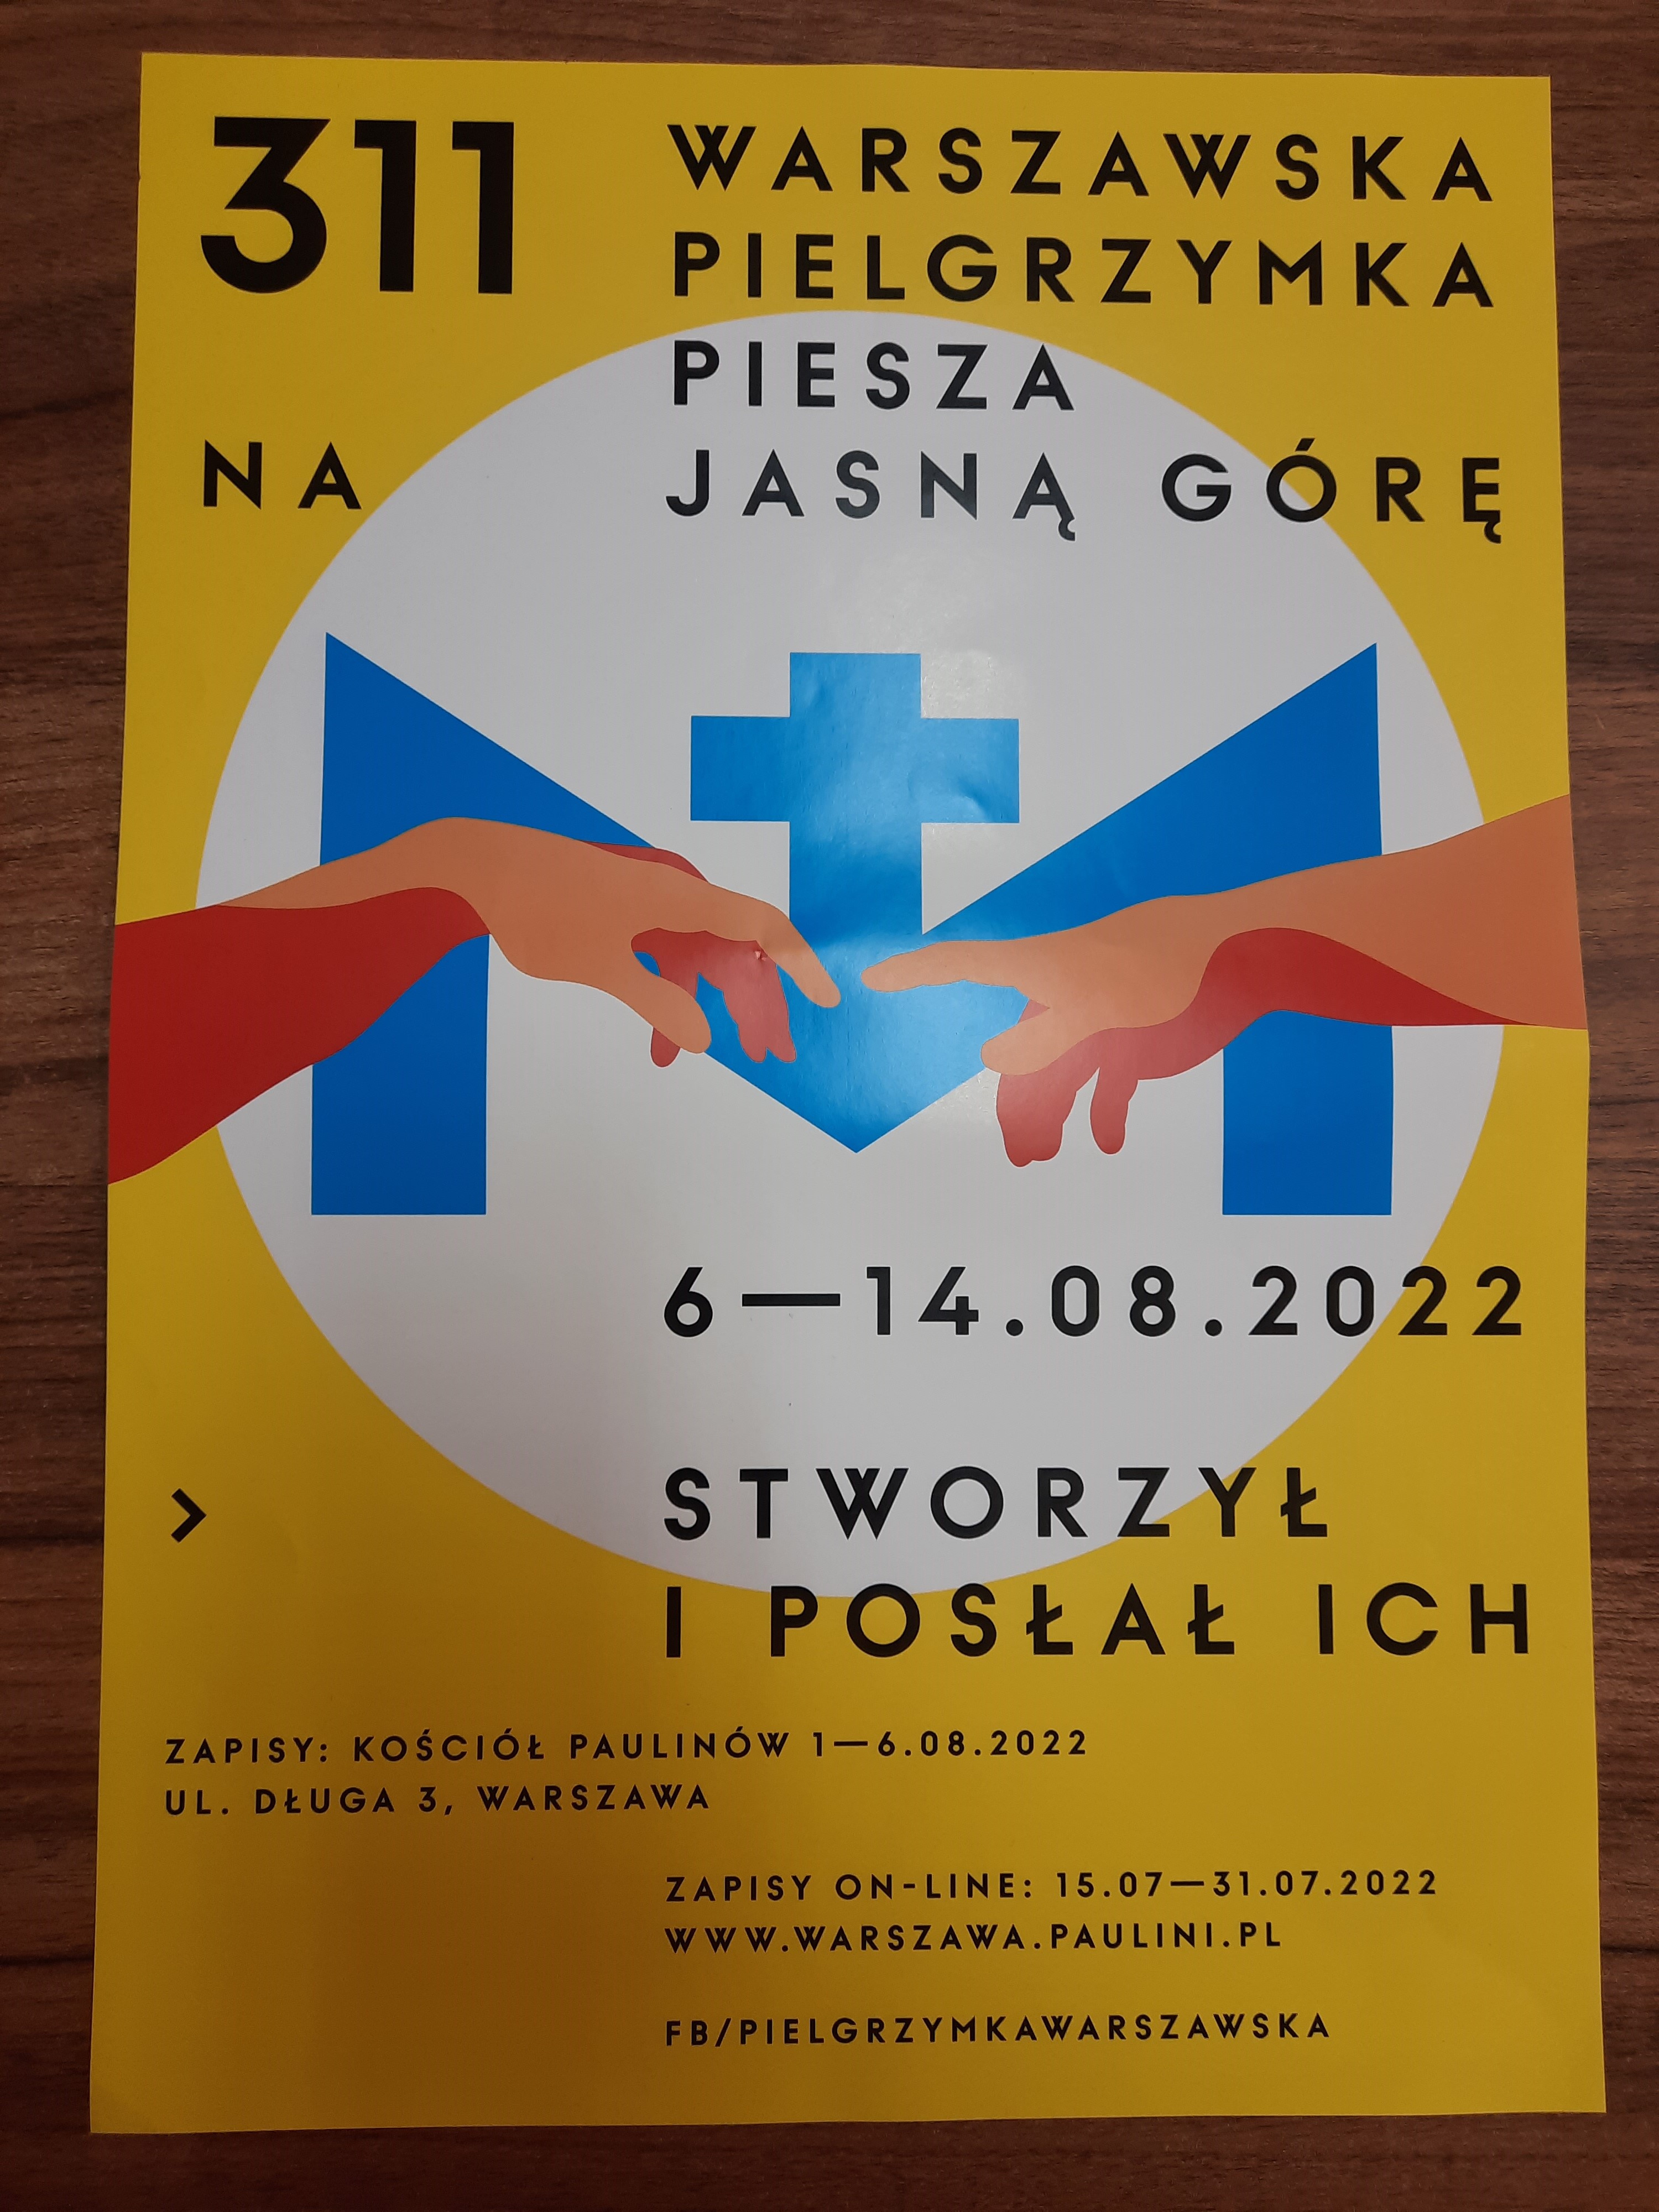 Zaproszenie 311 Warszawska Pielgrzymka Piesza.jpg (1.46 MB)